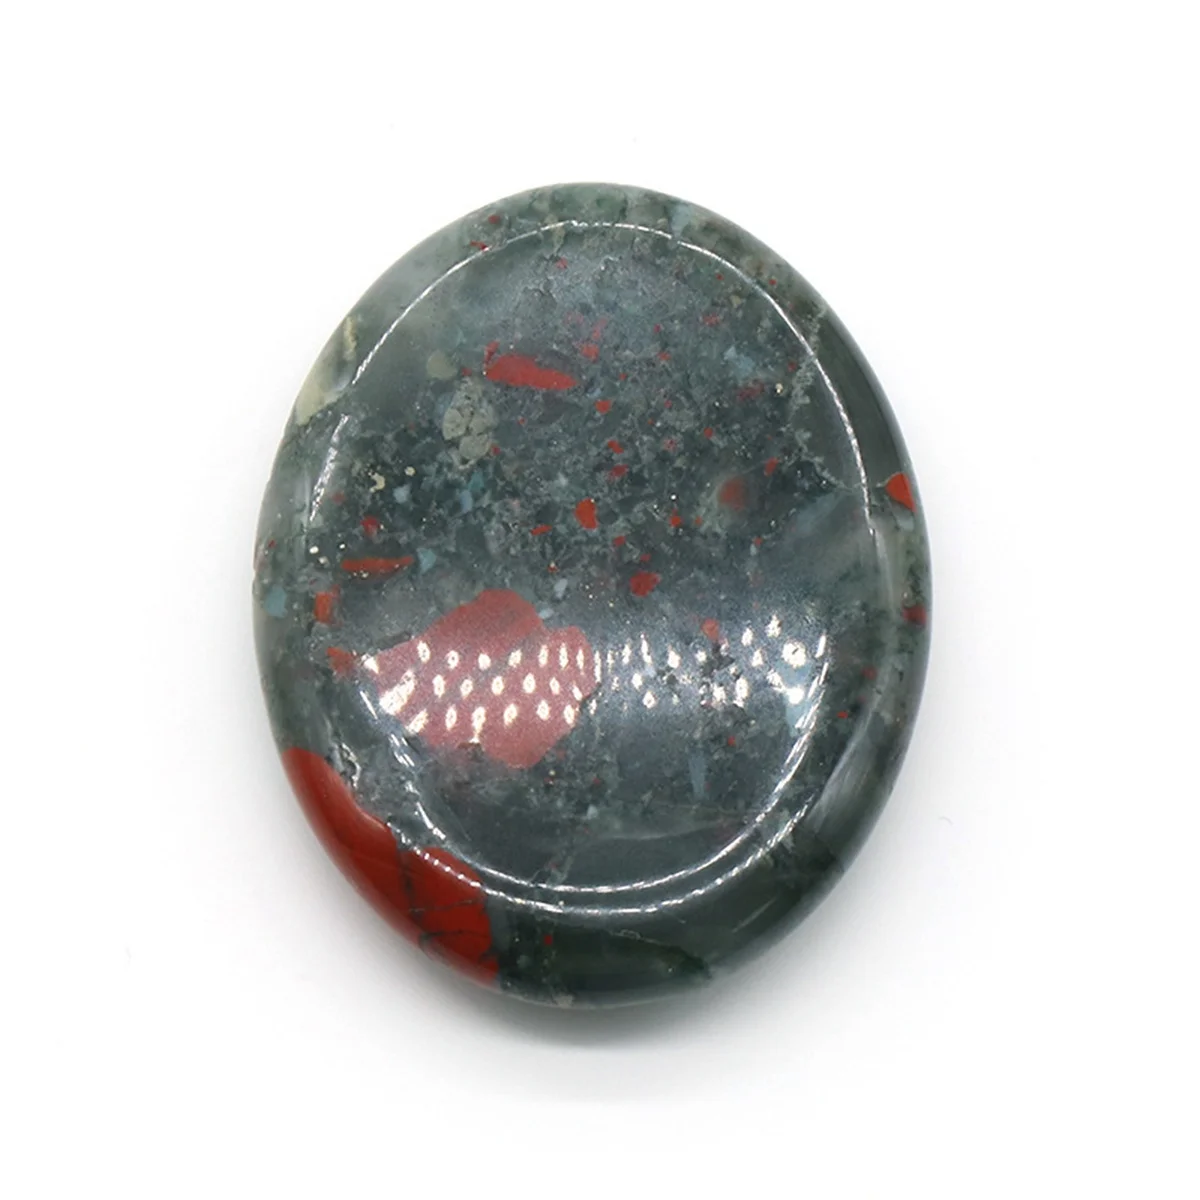 

Опущенный кровавый камень, волшебный камень для снятия стресса, легко носить с собой, лечебный чакра, волнующийся драгоценный камень